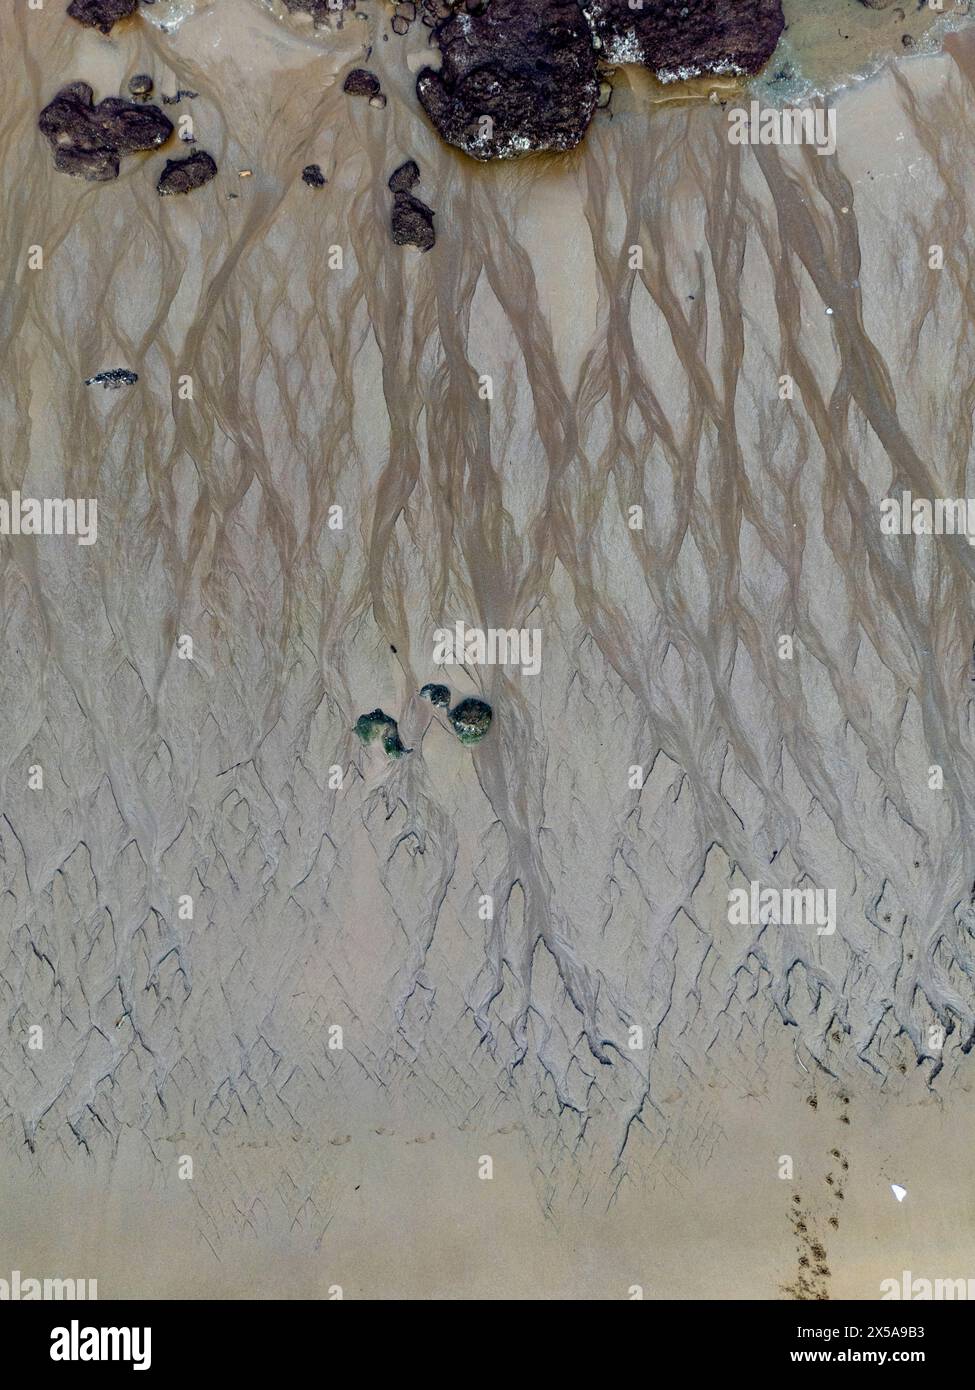 Ein atemberaubender Blick aus der Luft zeigt die einzigartigen Muster, die sich im Sand am Arrigunaga Beach, Getxo, während einer außergewöhnlich niedrigen Flut gebildet haben, mit einem Hauch von Stockfoto